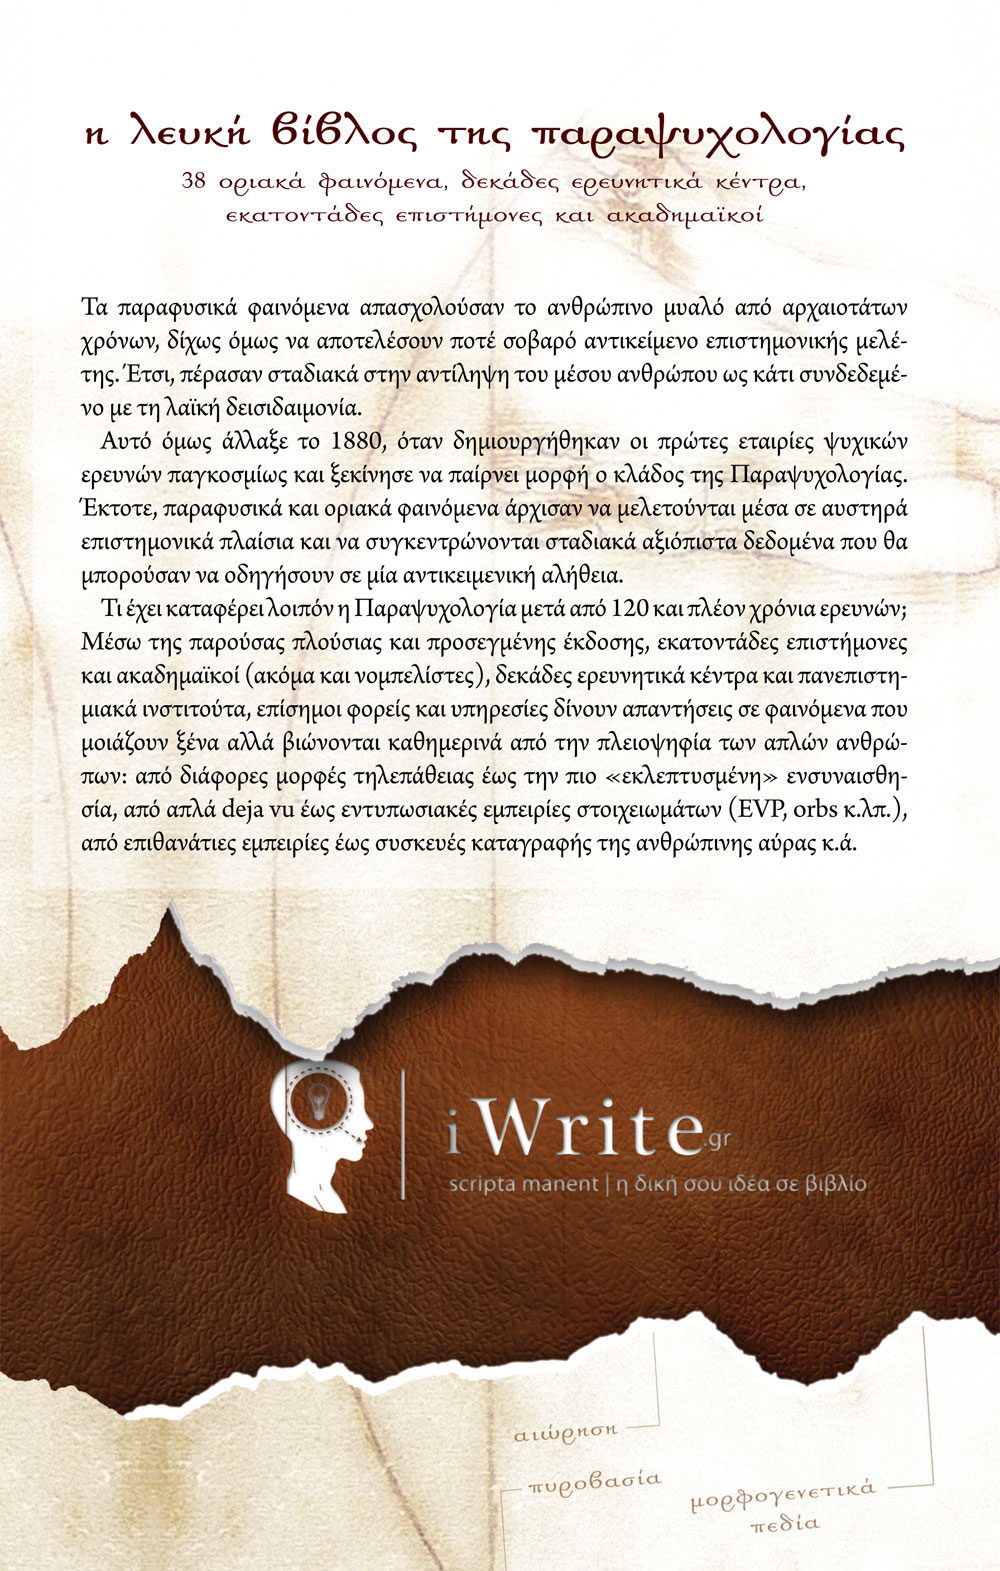 Οπισθόφυλλο, Η Λευκή Βίβλος της Παραψυχολογίας, Εκδόσεις Πηγή